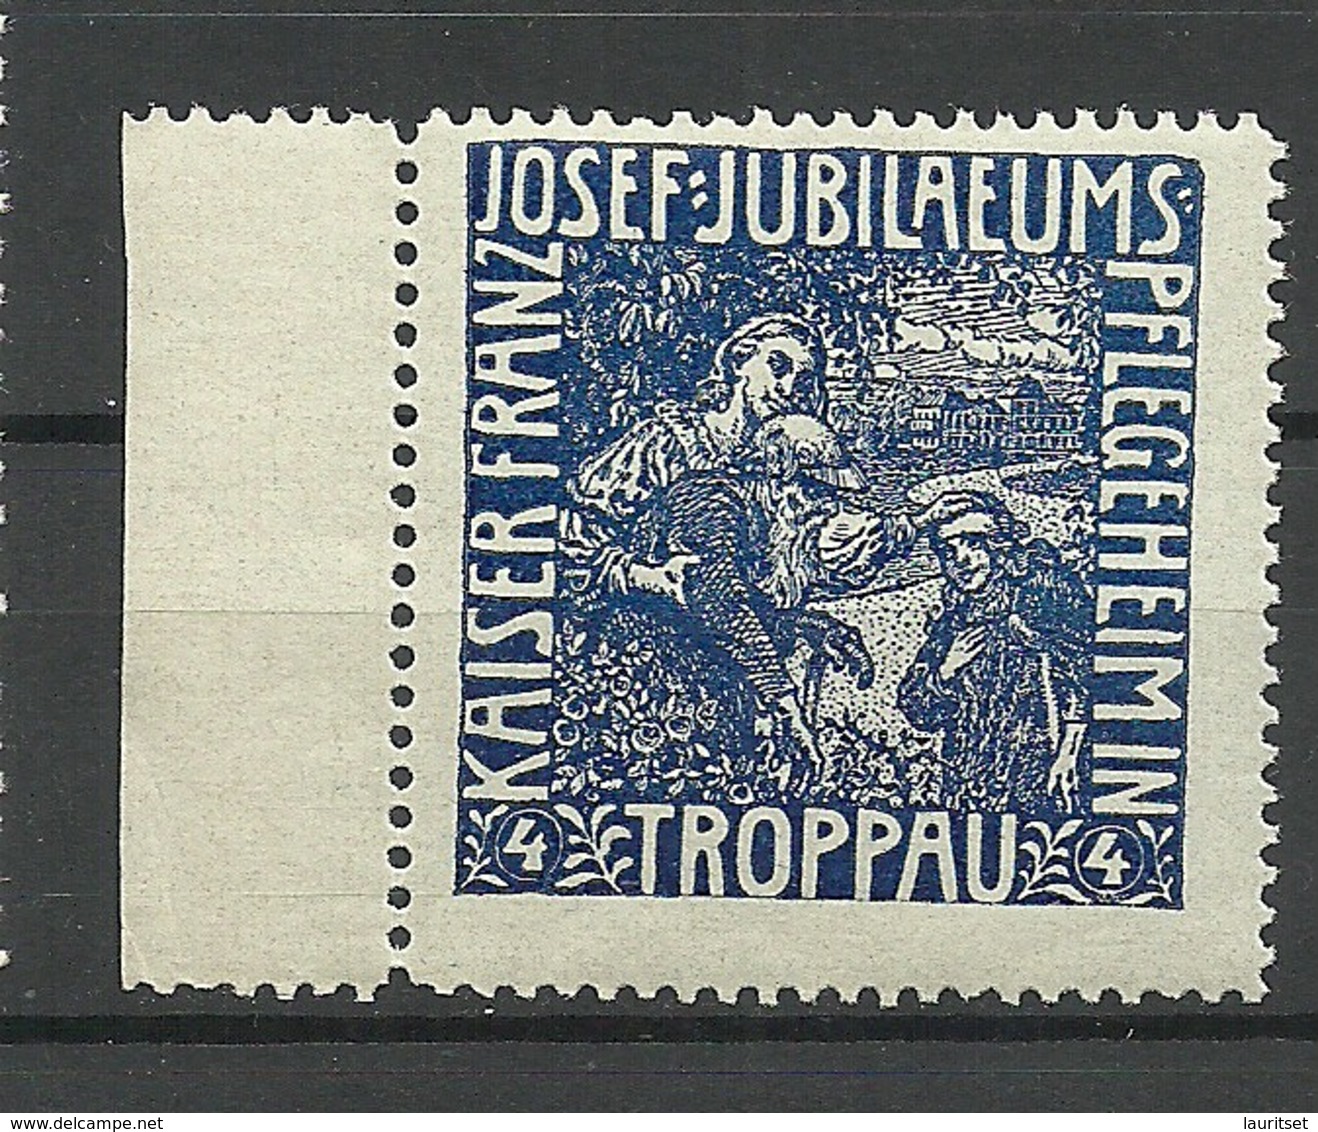 POLAND Deutschland Ca 1910 Keiser Franz Joseph Jubiläums Pflegeheim Troppau Vignette Werbemarke MNH - Vignetten (Erinnophilie)